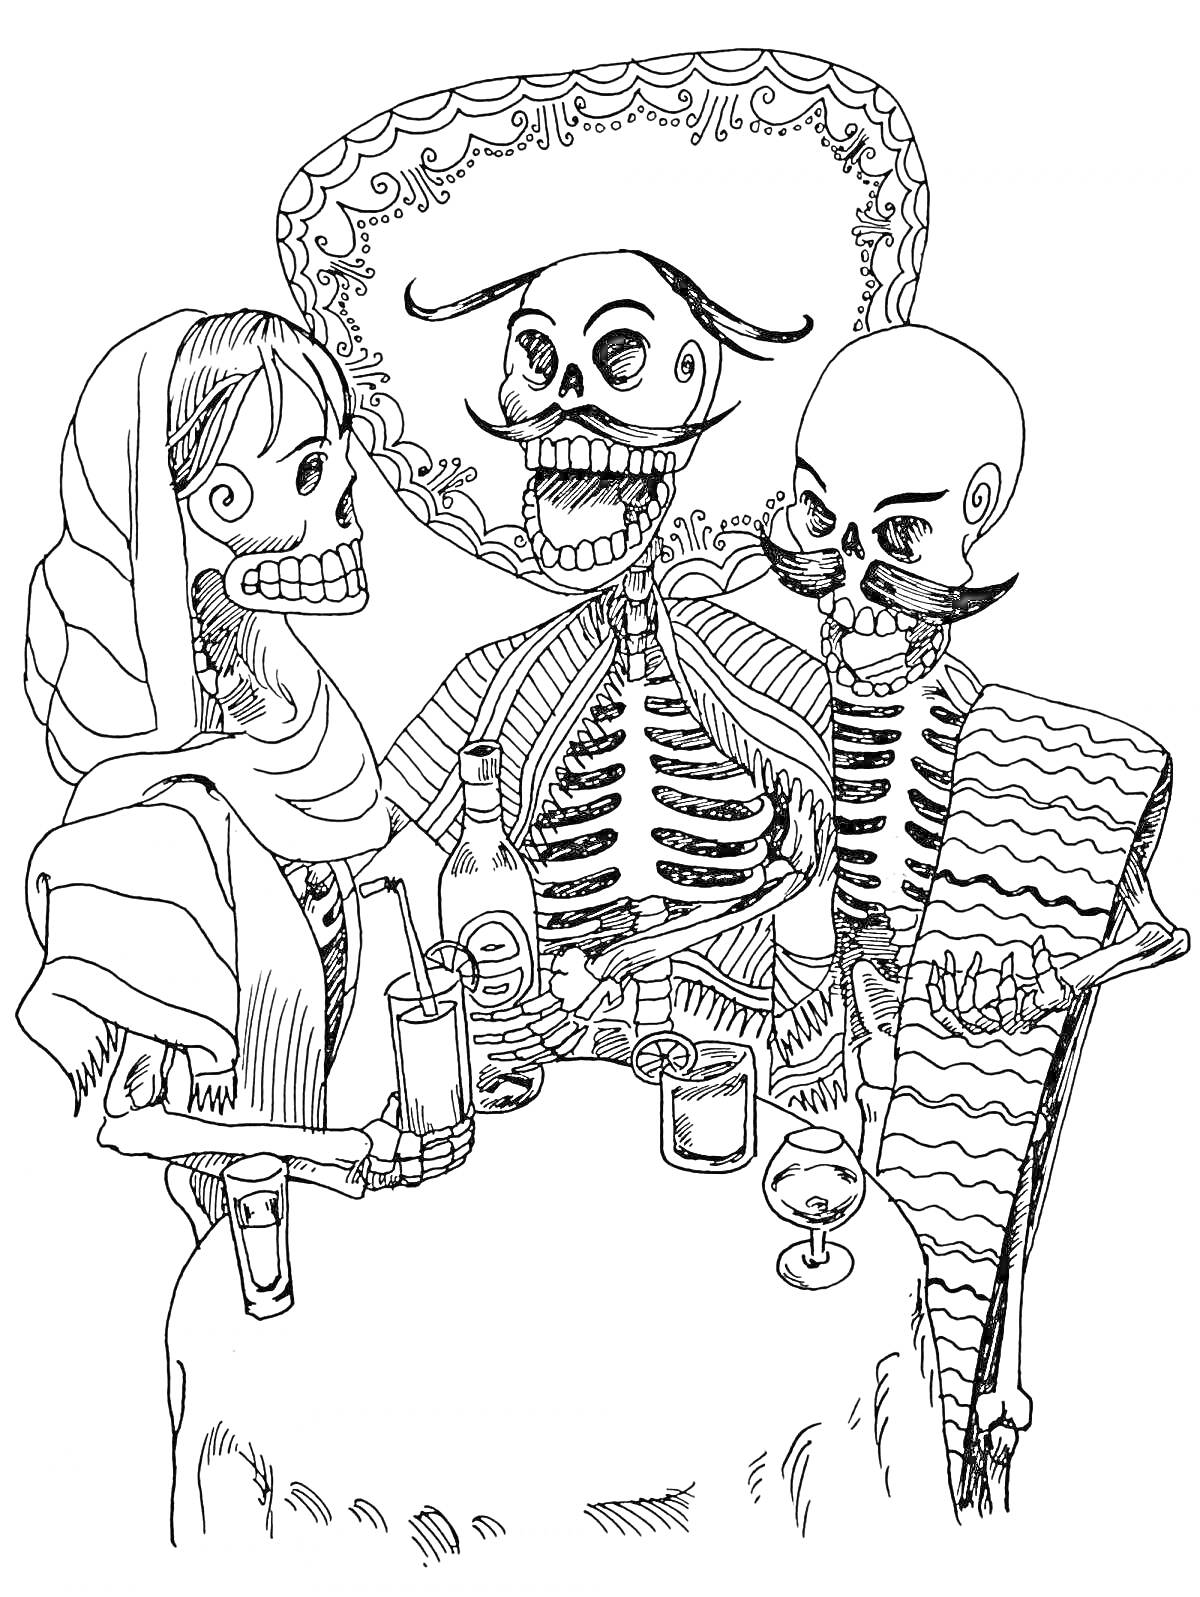 РаскраскаТри скелета в праздничной одежде за столом с напитками